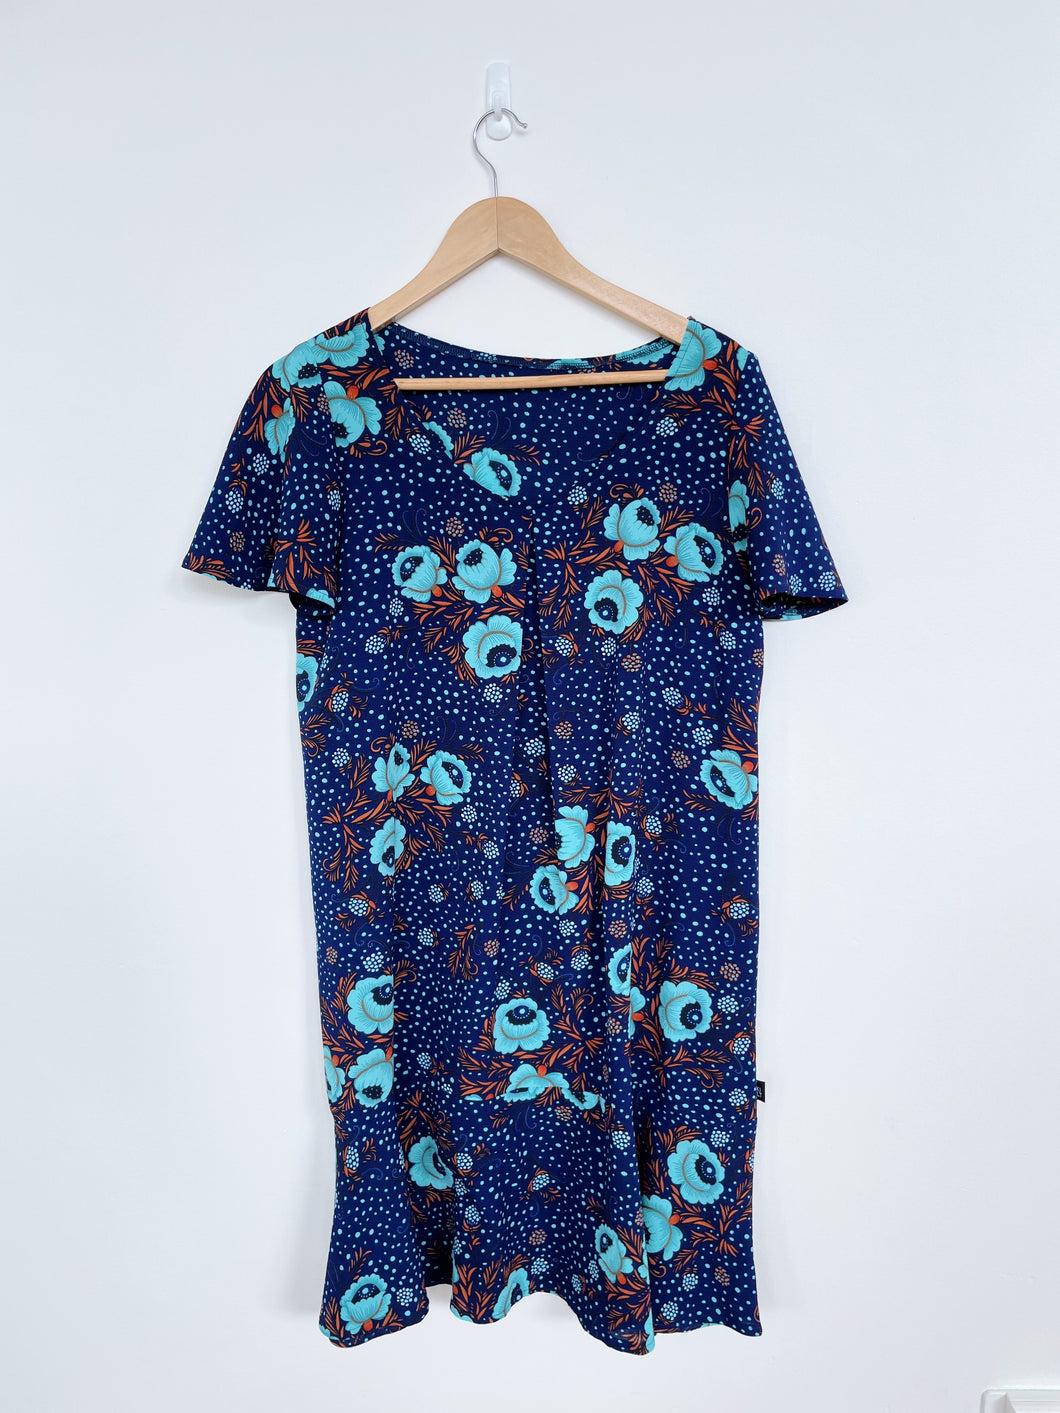 KILT Blue Floral Dress (M)